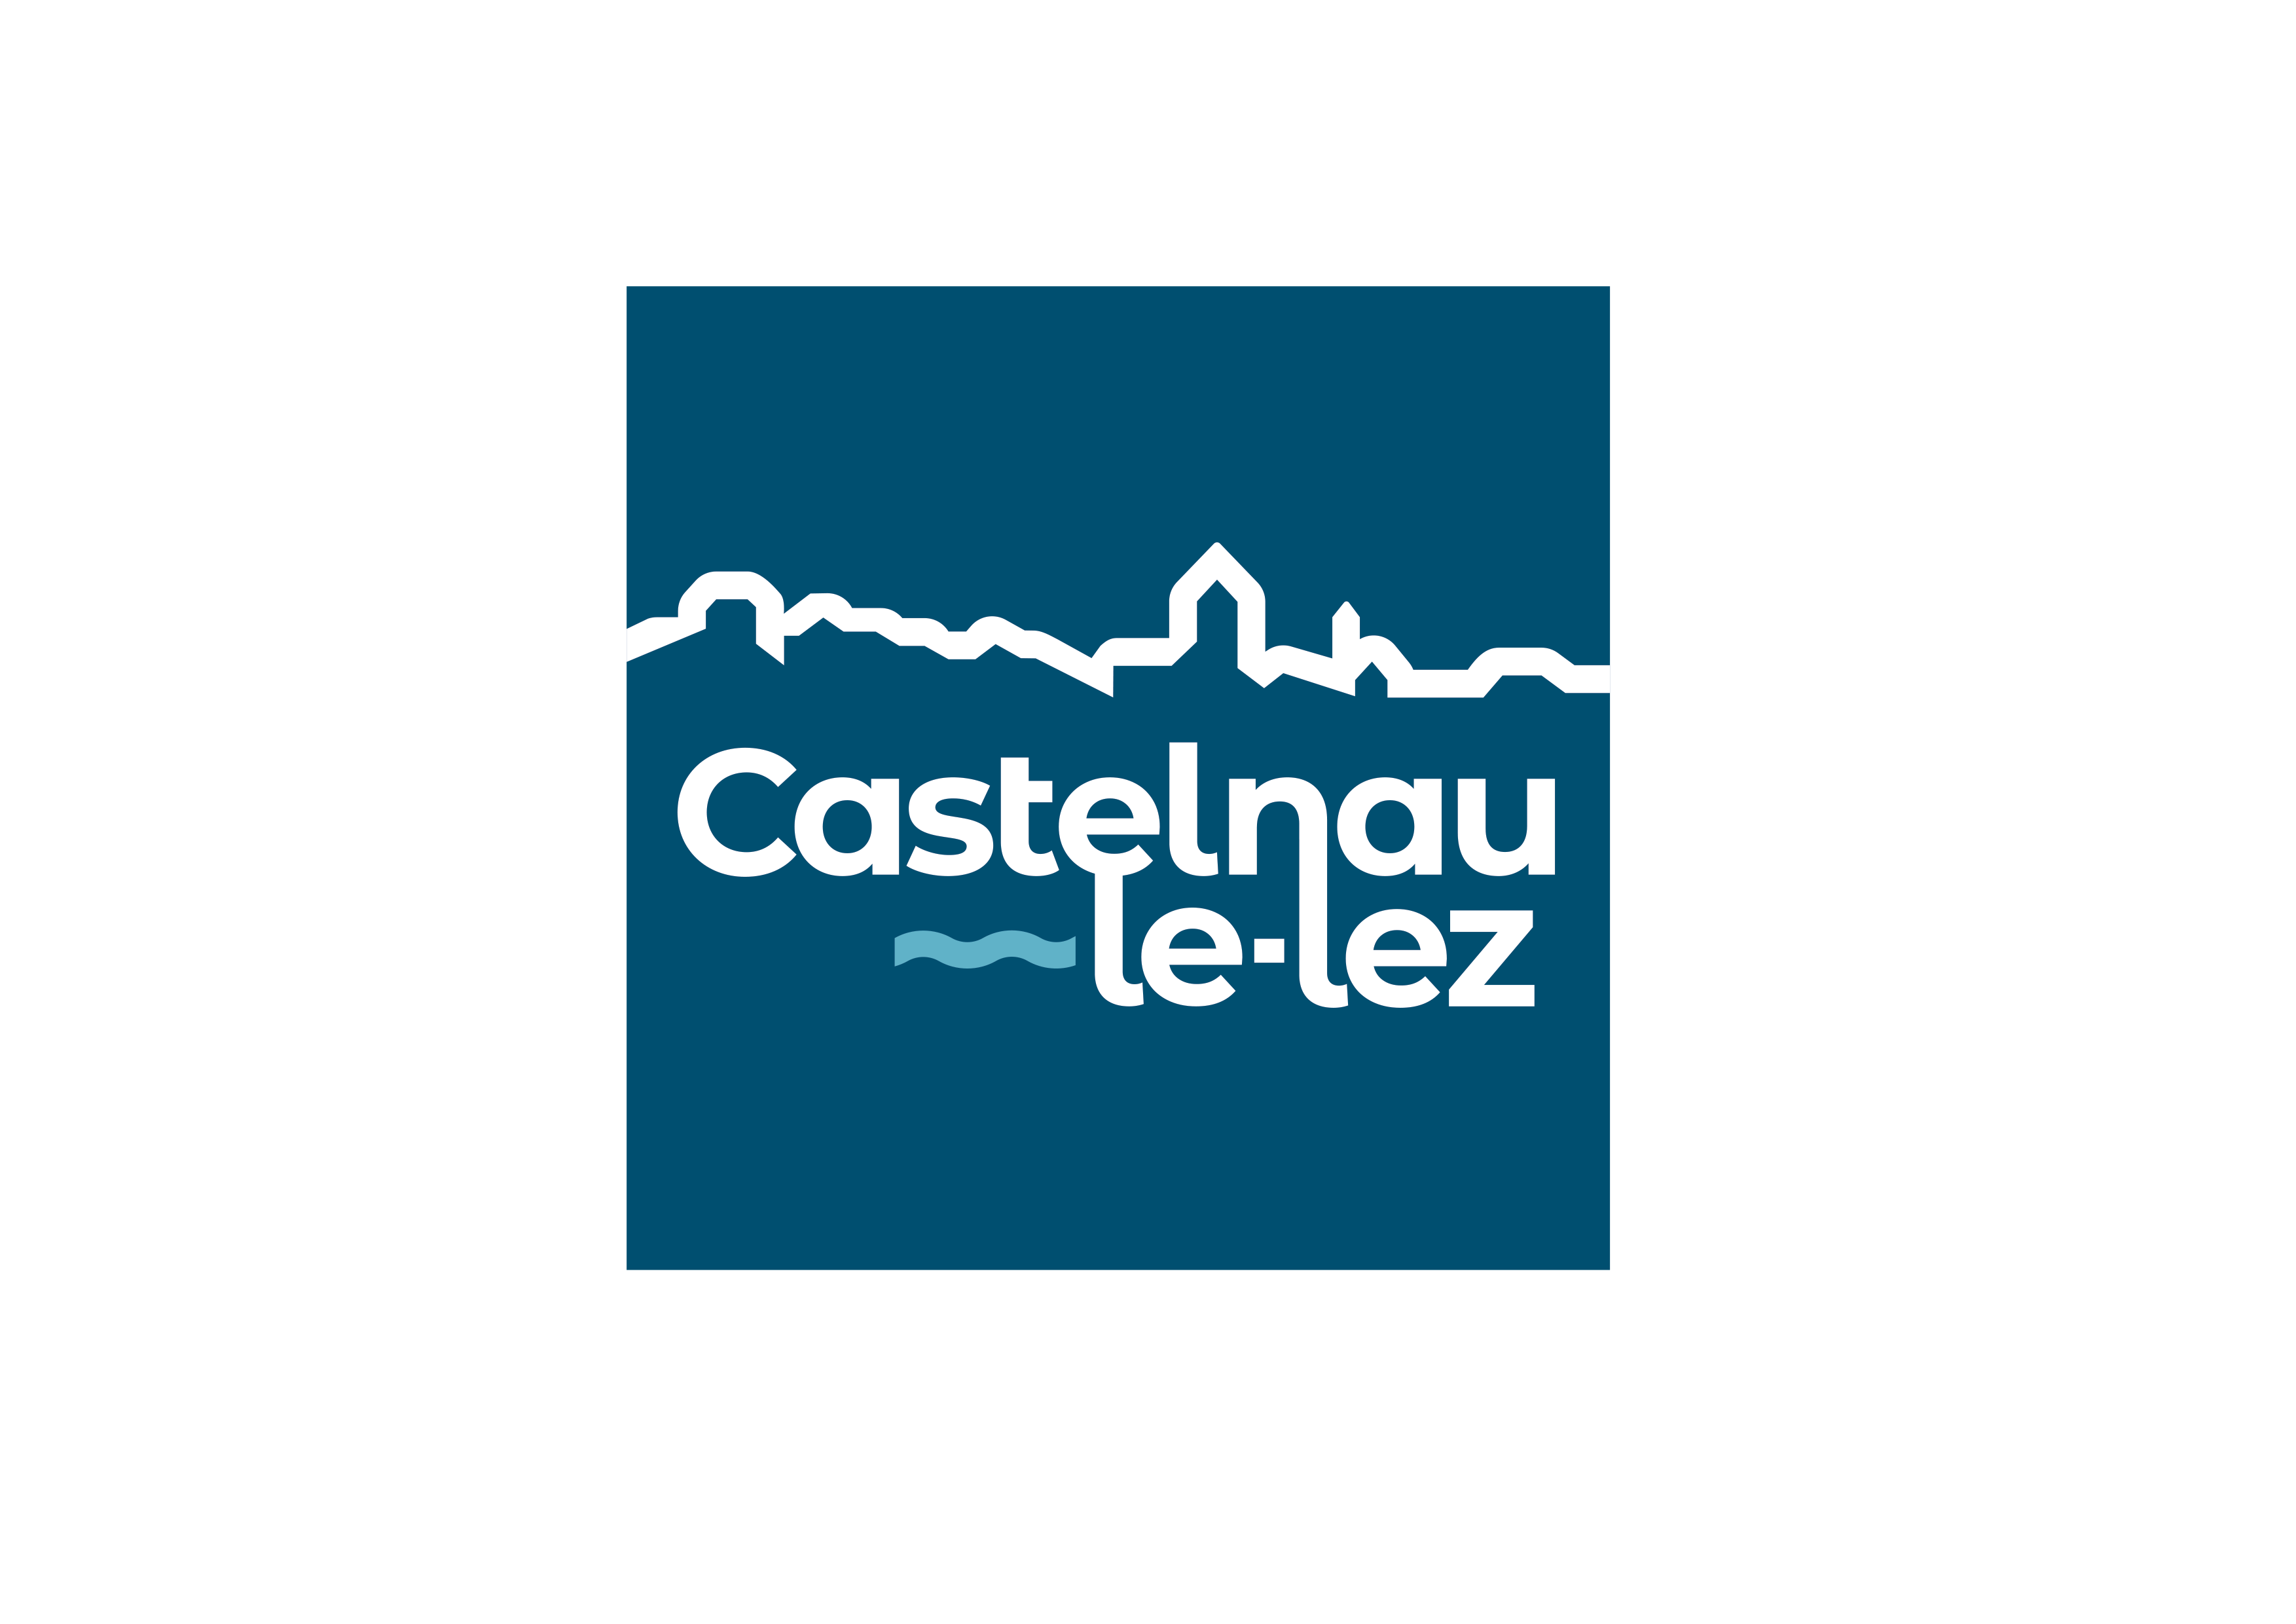 La ville de Castelnau-le-Lez